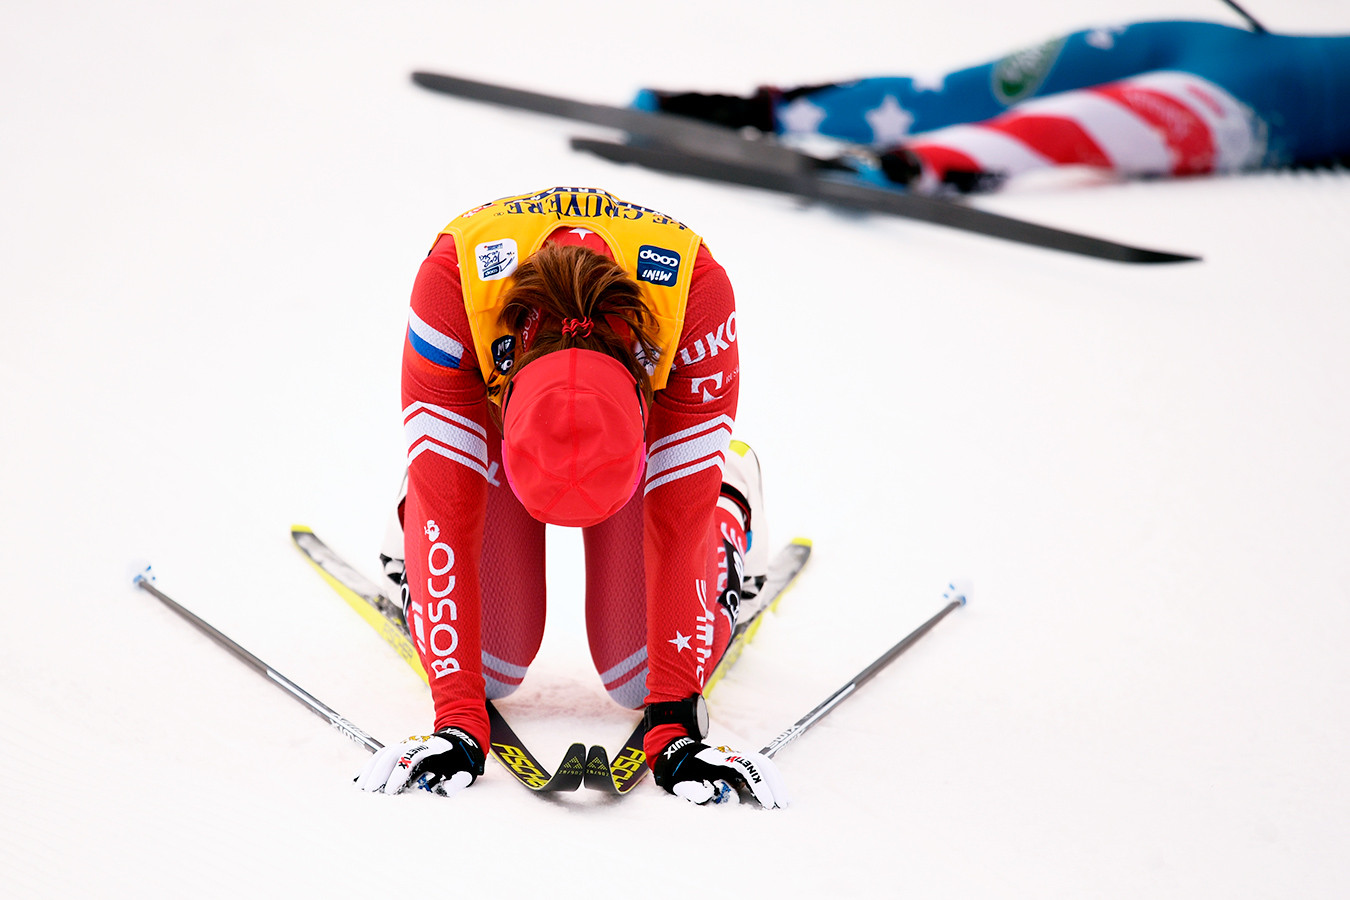 Непряева упала в финале спринта на «Тур де Ски» после контакта с американкой